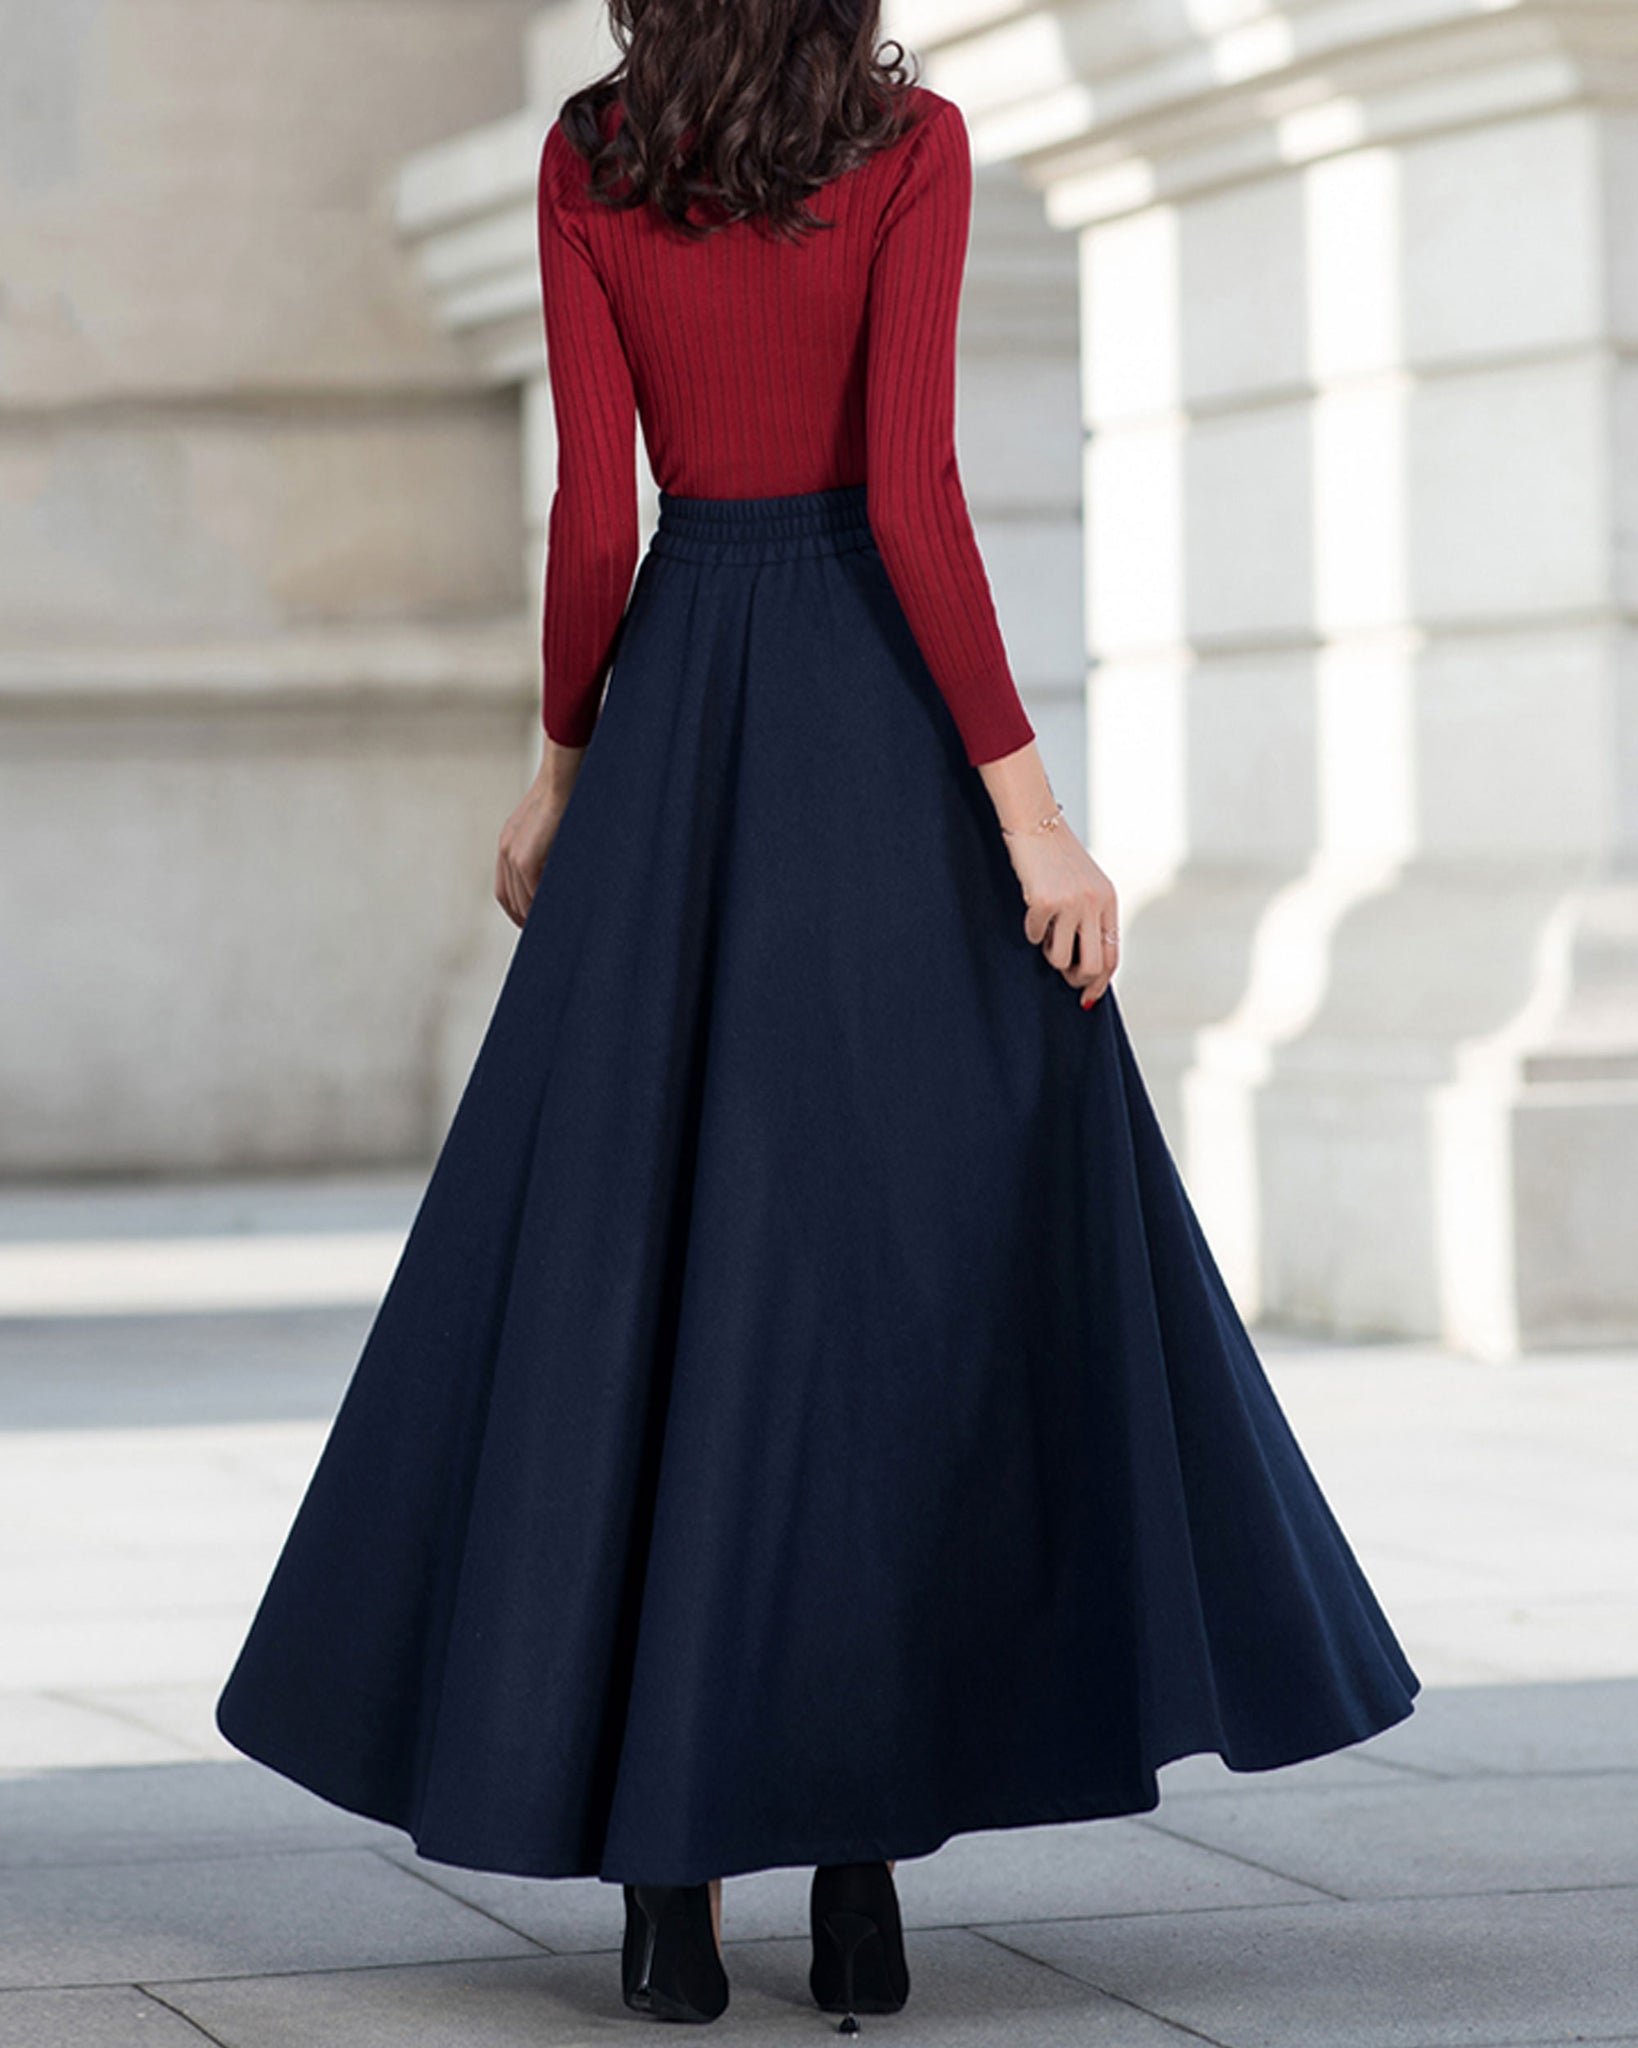 Wool skirt, Winter skirt, black skirt, long wool skirt, vintage